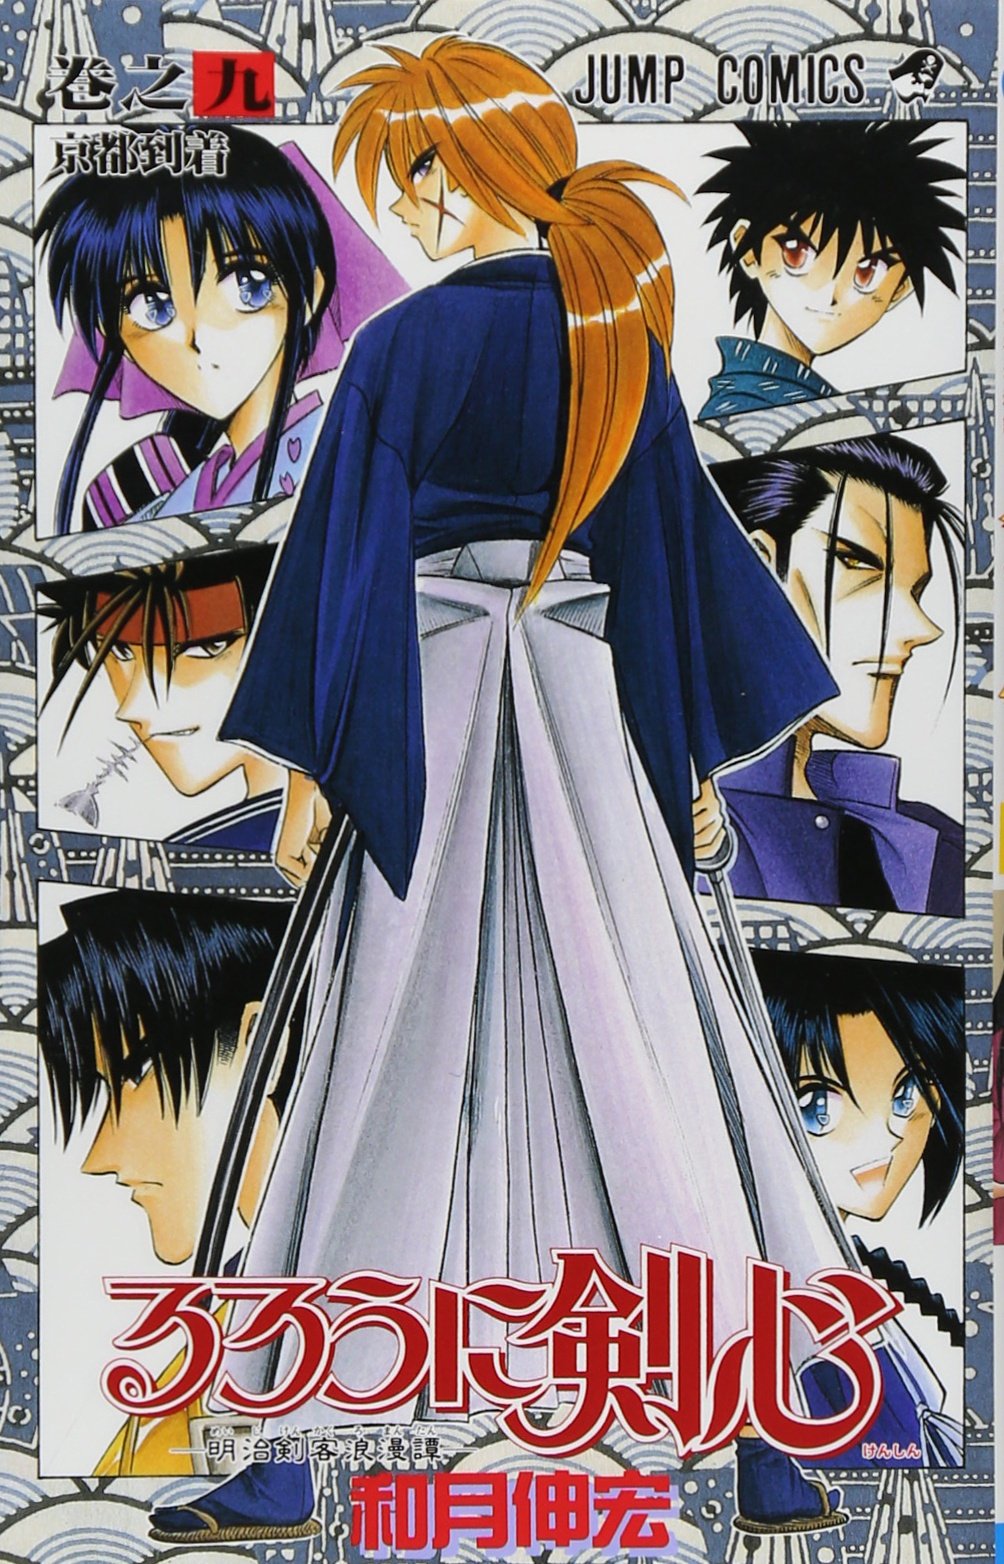 Rurouni Kenshin Vol. 9